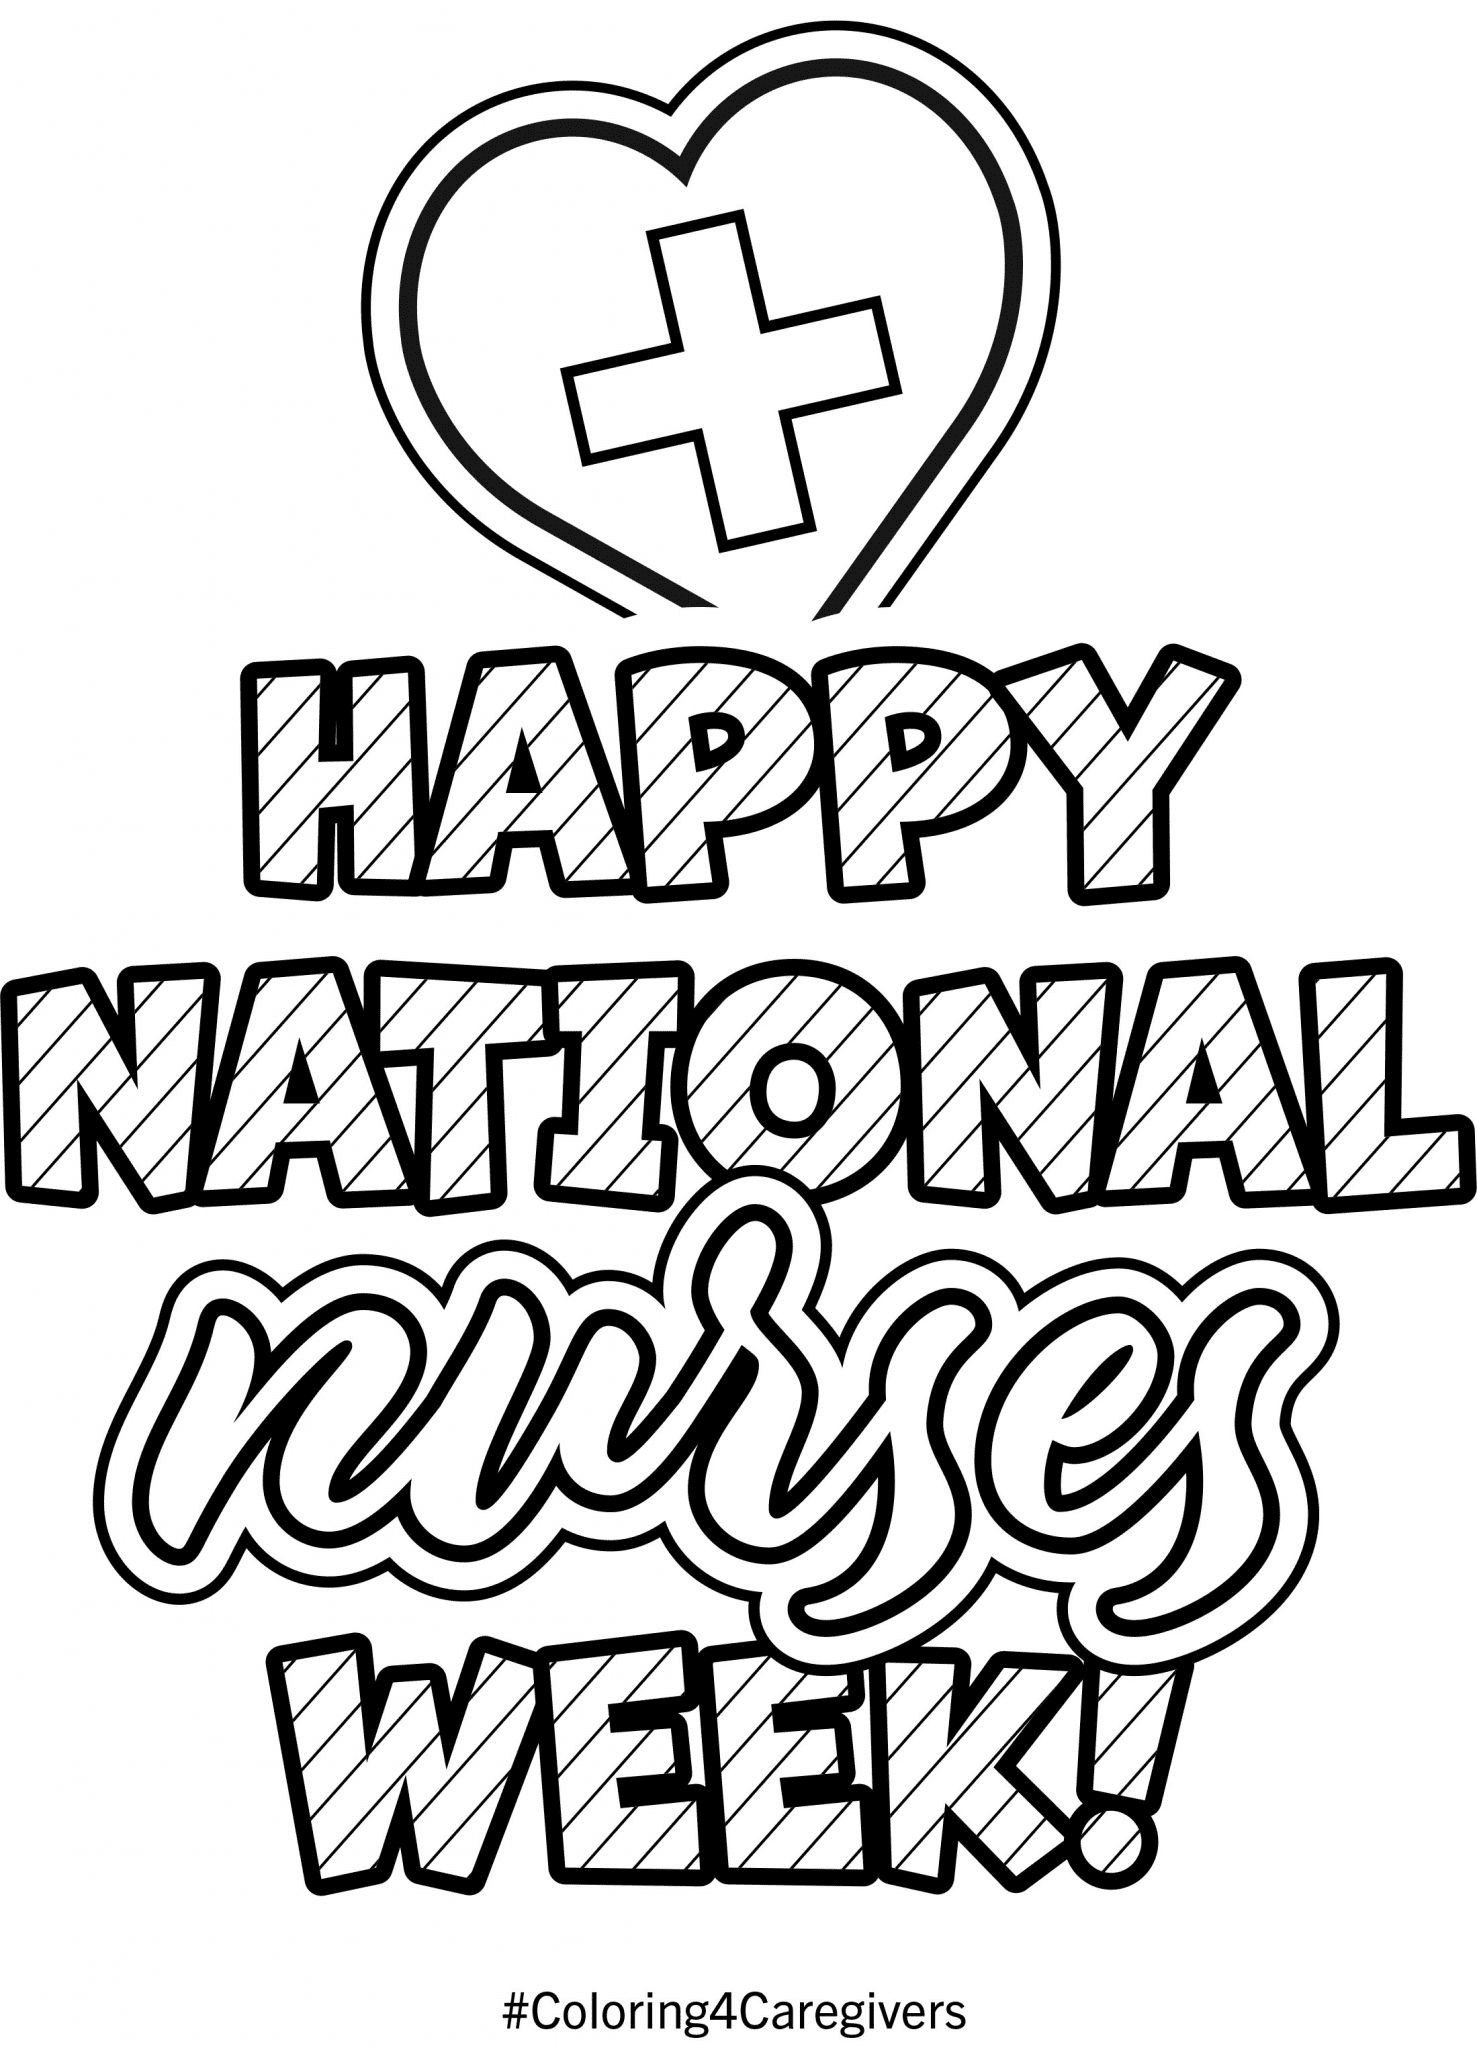 Fröhliche nationale Woche der Krankenschwestern zum Ausmalen